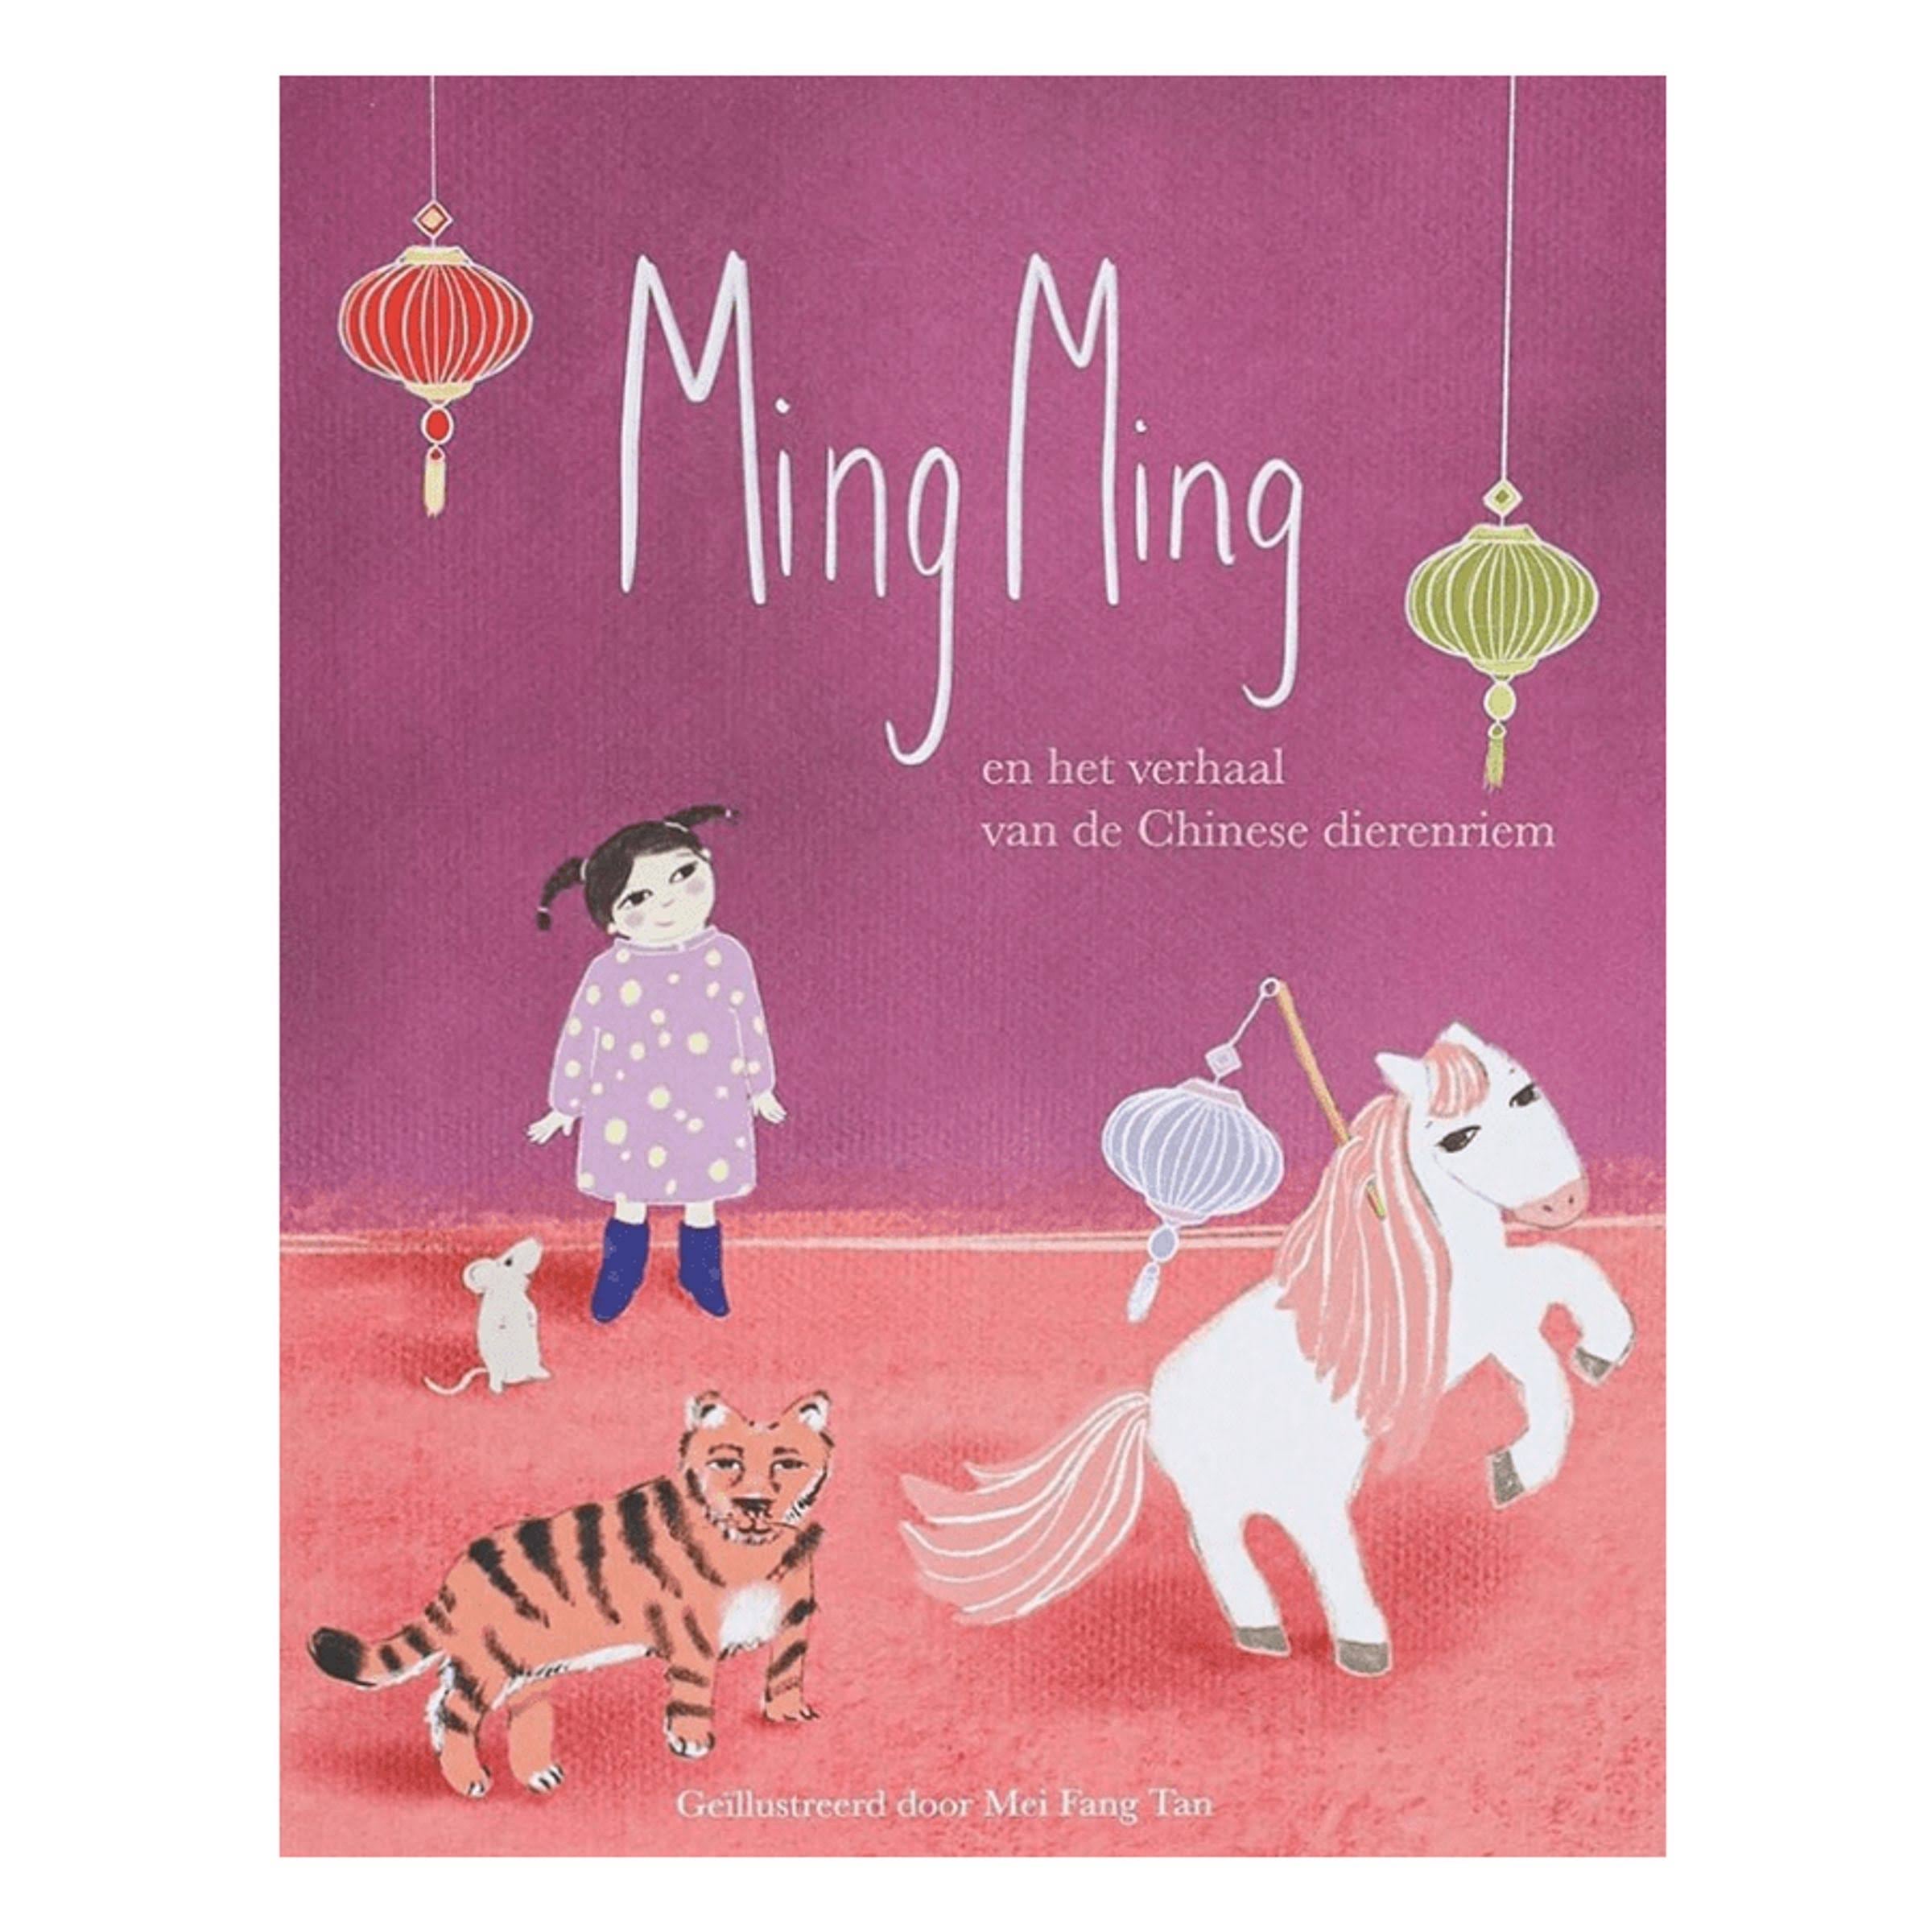 Speel, leer en groei met Ming Ming van Colourful Goodies - Inclusiviteit in elk detail.